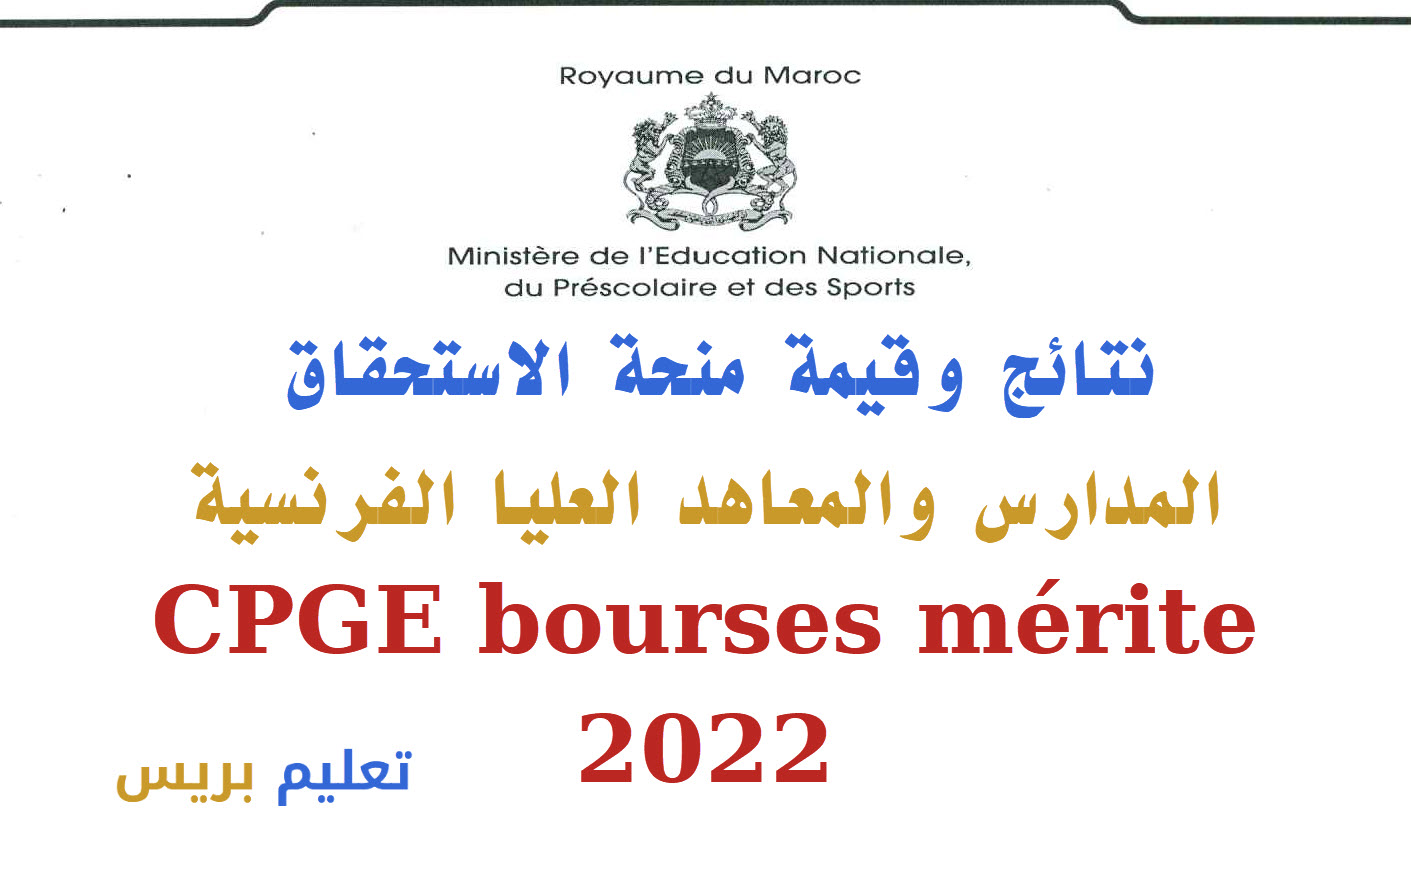 نتائج وقيمة منحة الاستحقاق المدارس والمعاهد العليا الفرنسية CPGE bourses mérite 2022